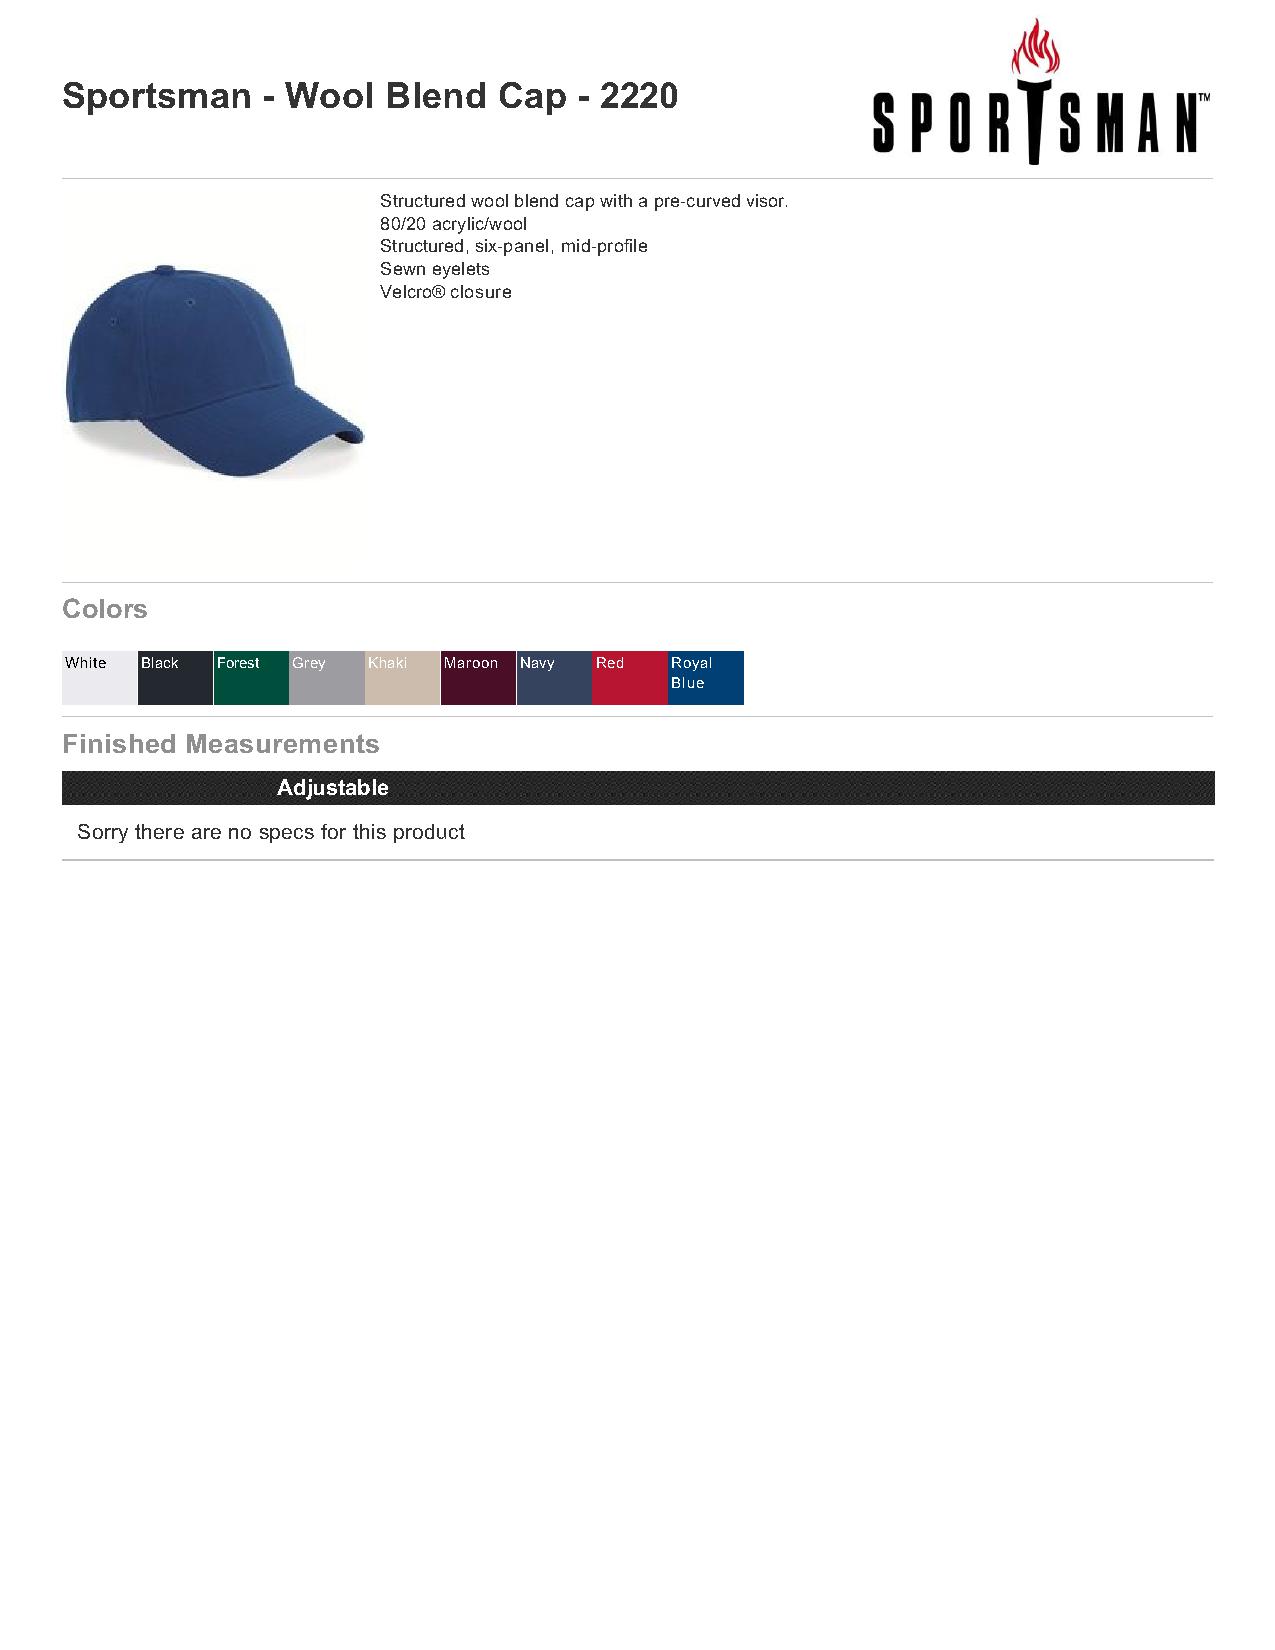 Sportsman Cap 2220 Wool Blend Cap $6.27 - Headwear